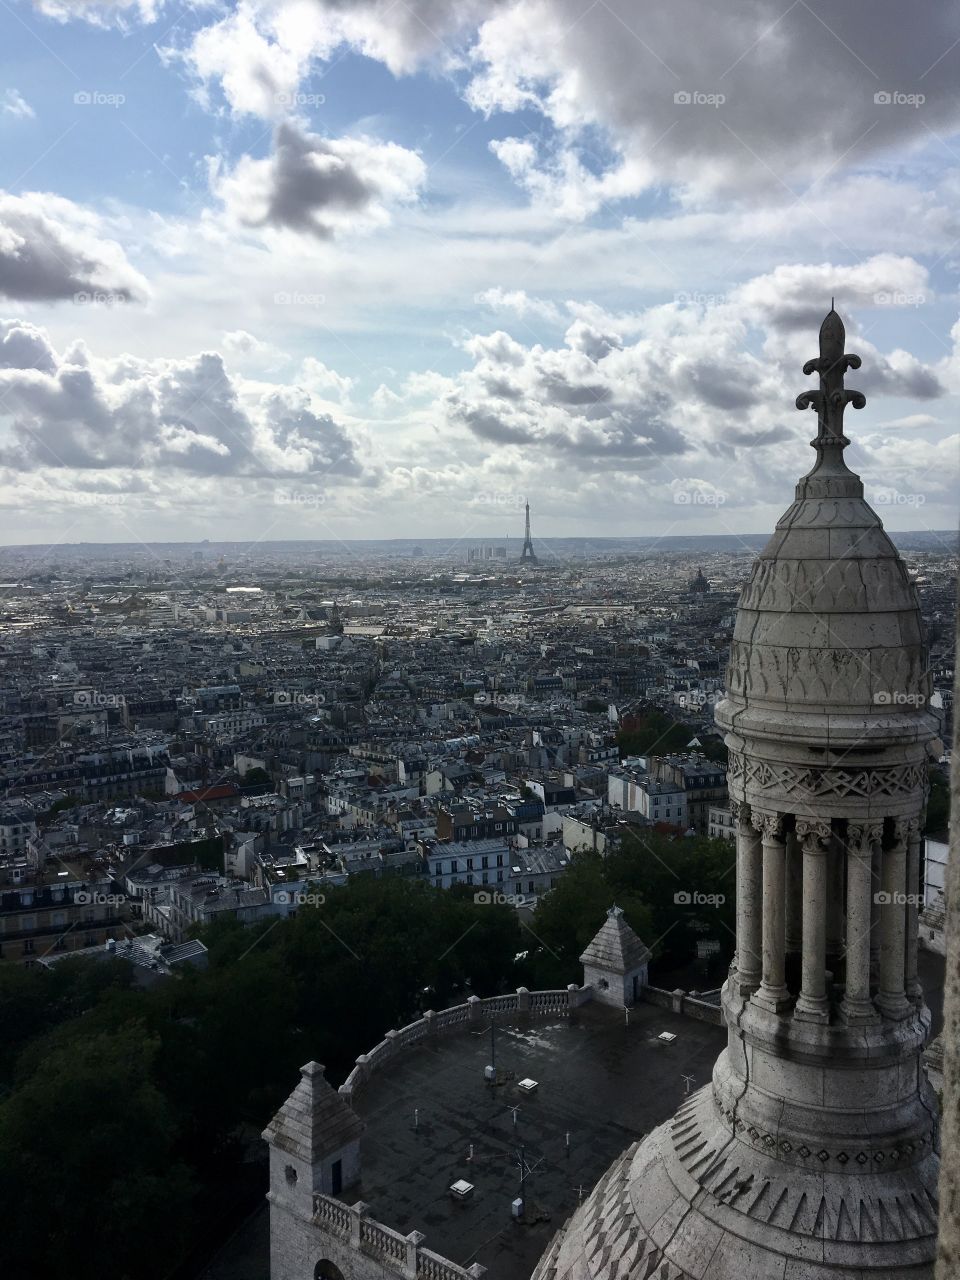 Paris as seen from Sacre Coeur Basilica 